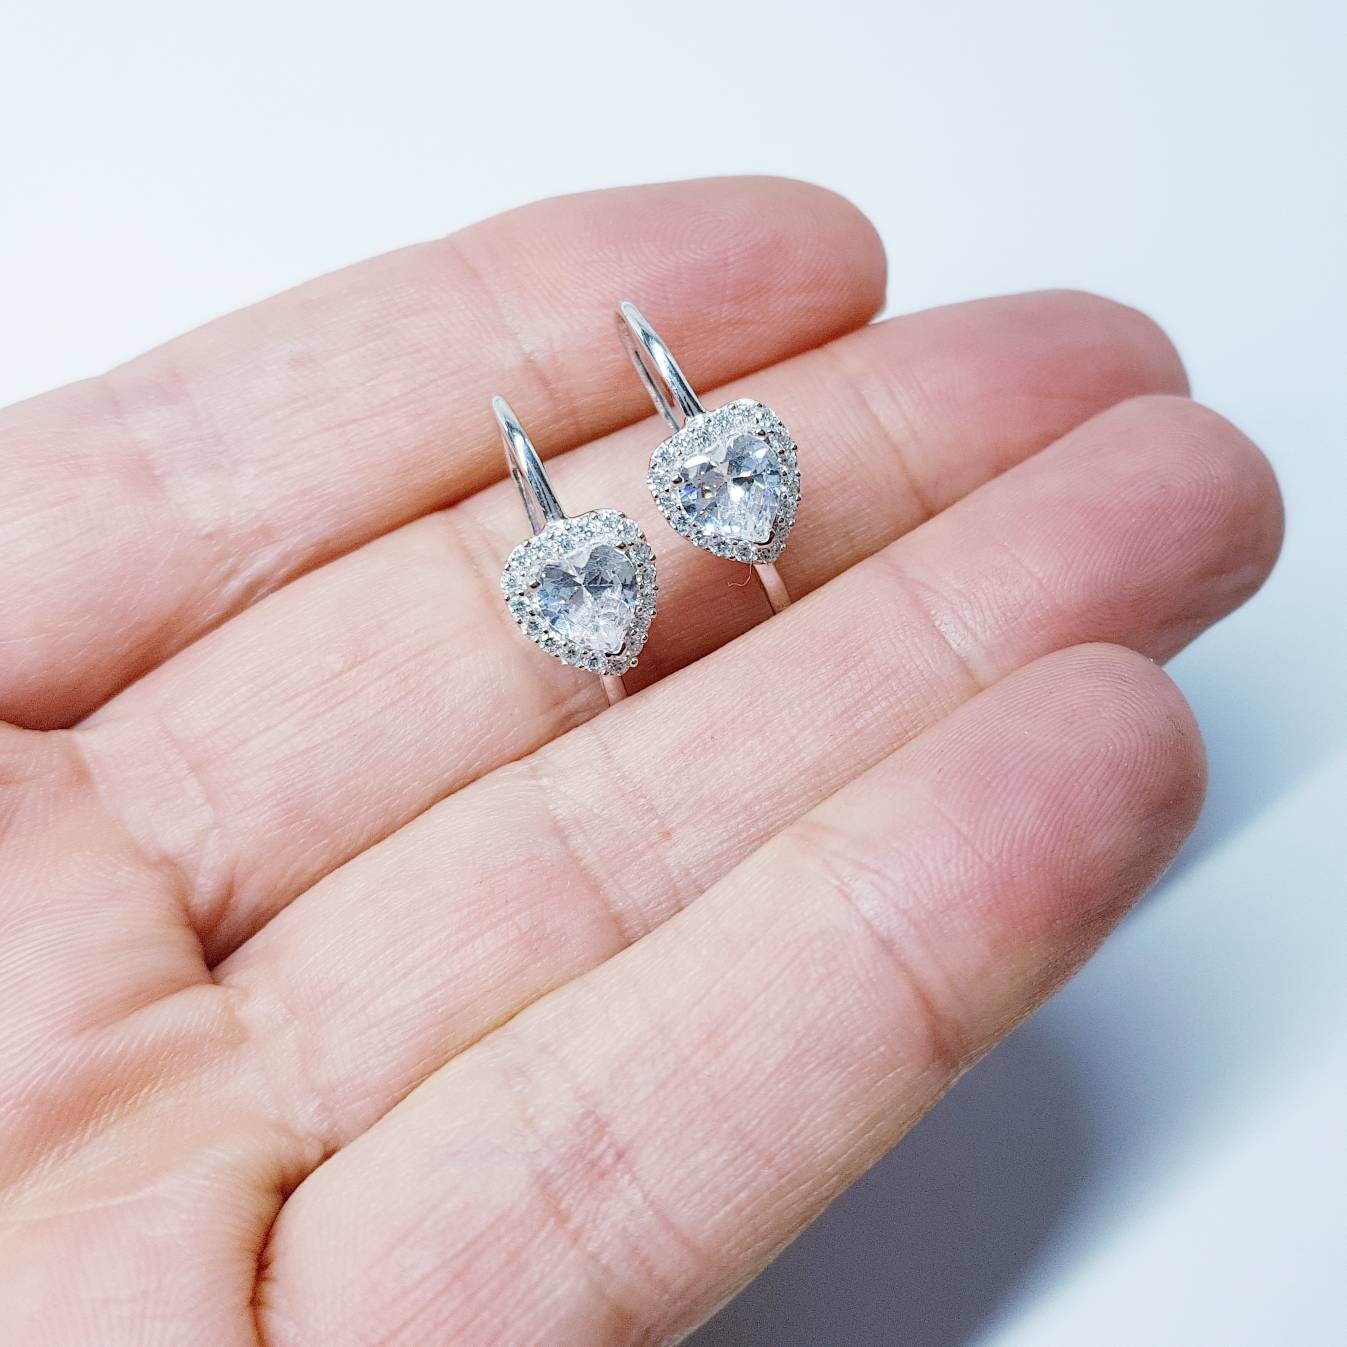 Sterling Silver heart earrings, lever back drop earrings, heart shaped earrings, diamond halo earrings, bridesmaid earrings